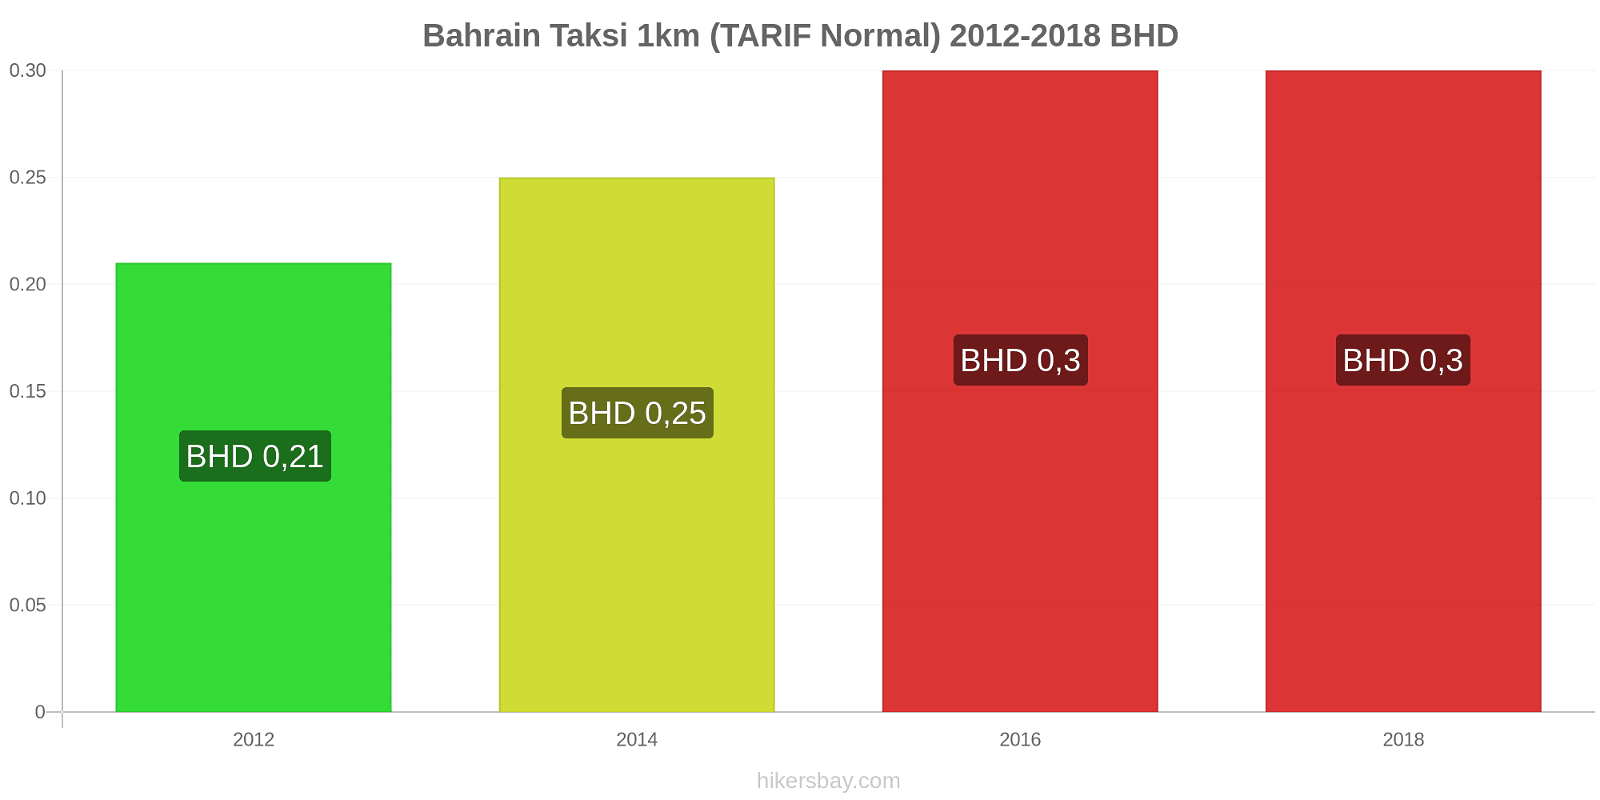 Bahrain perubahan harga Taksi 1km (Tarif Normal) hikersbay.com